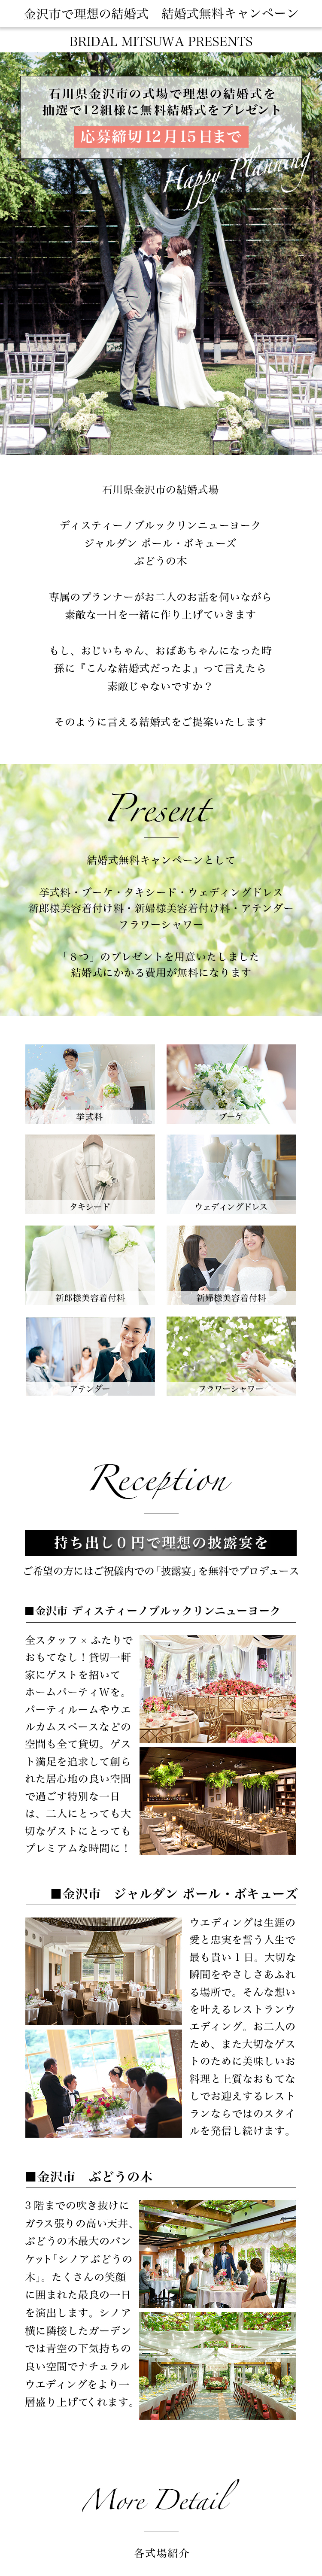 ハッピー花嫁w結婚式無料キャンペーン 石川